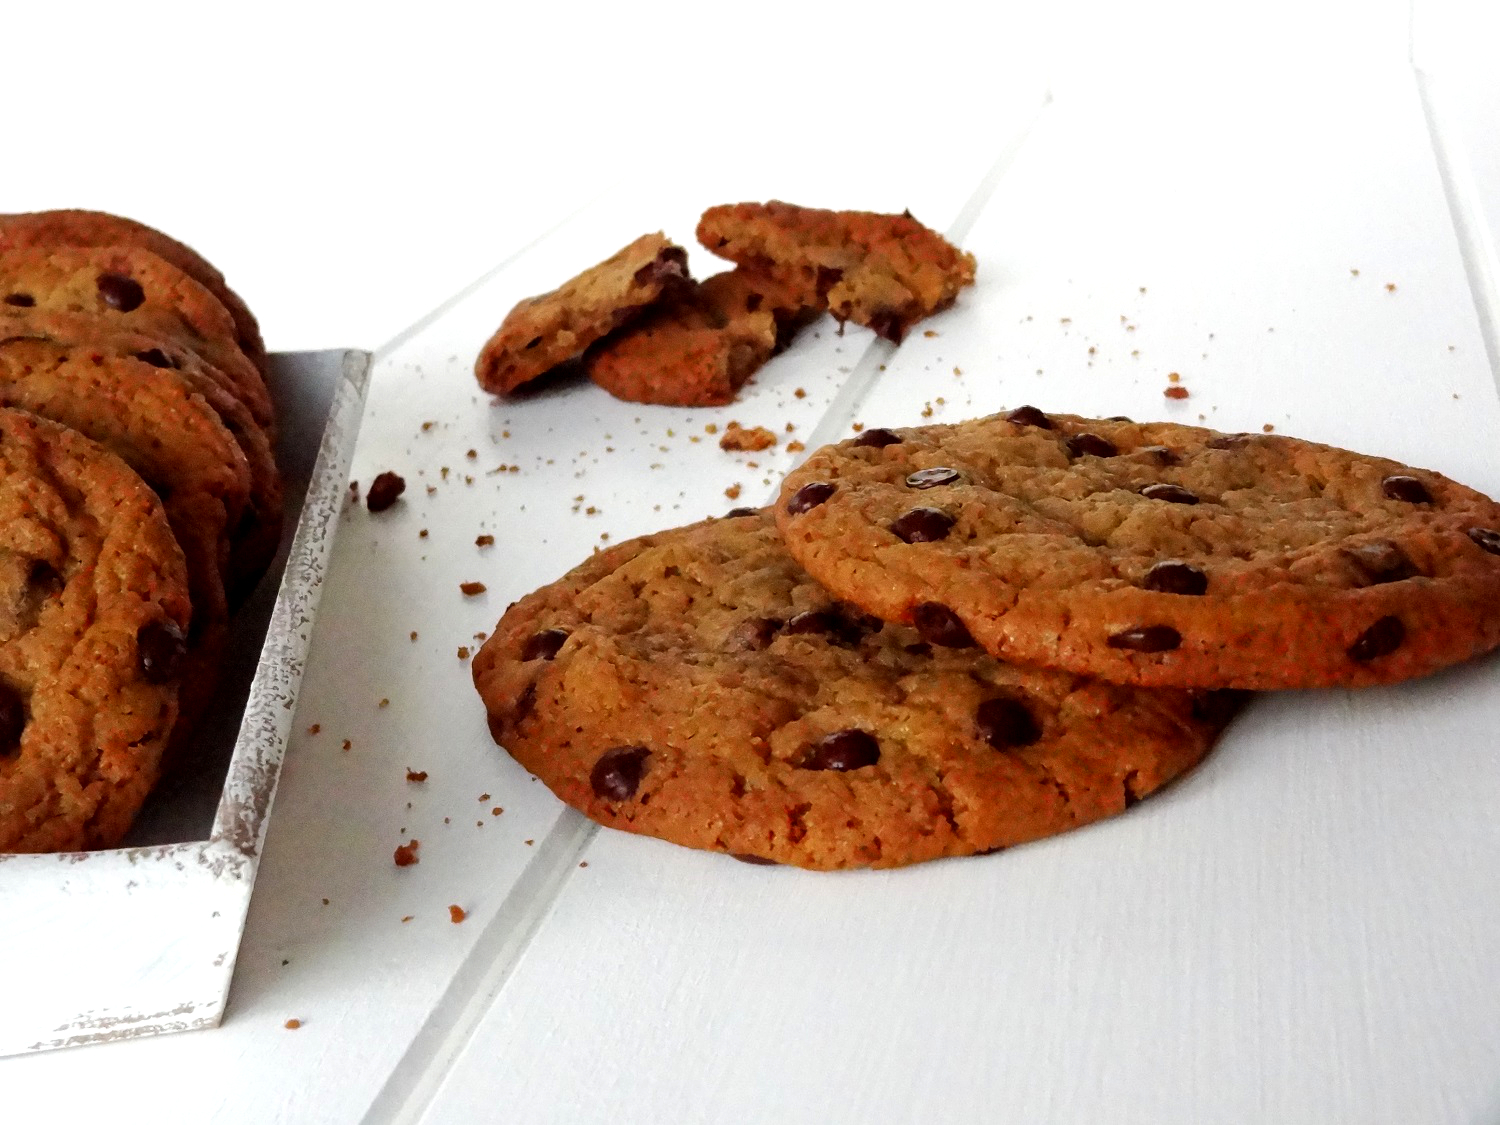 Foto de la receta de galletas con peptitas de chocolate